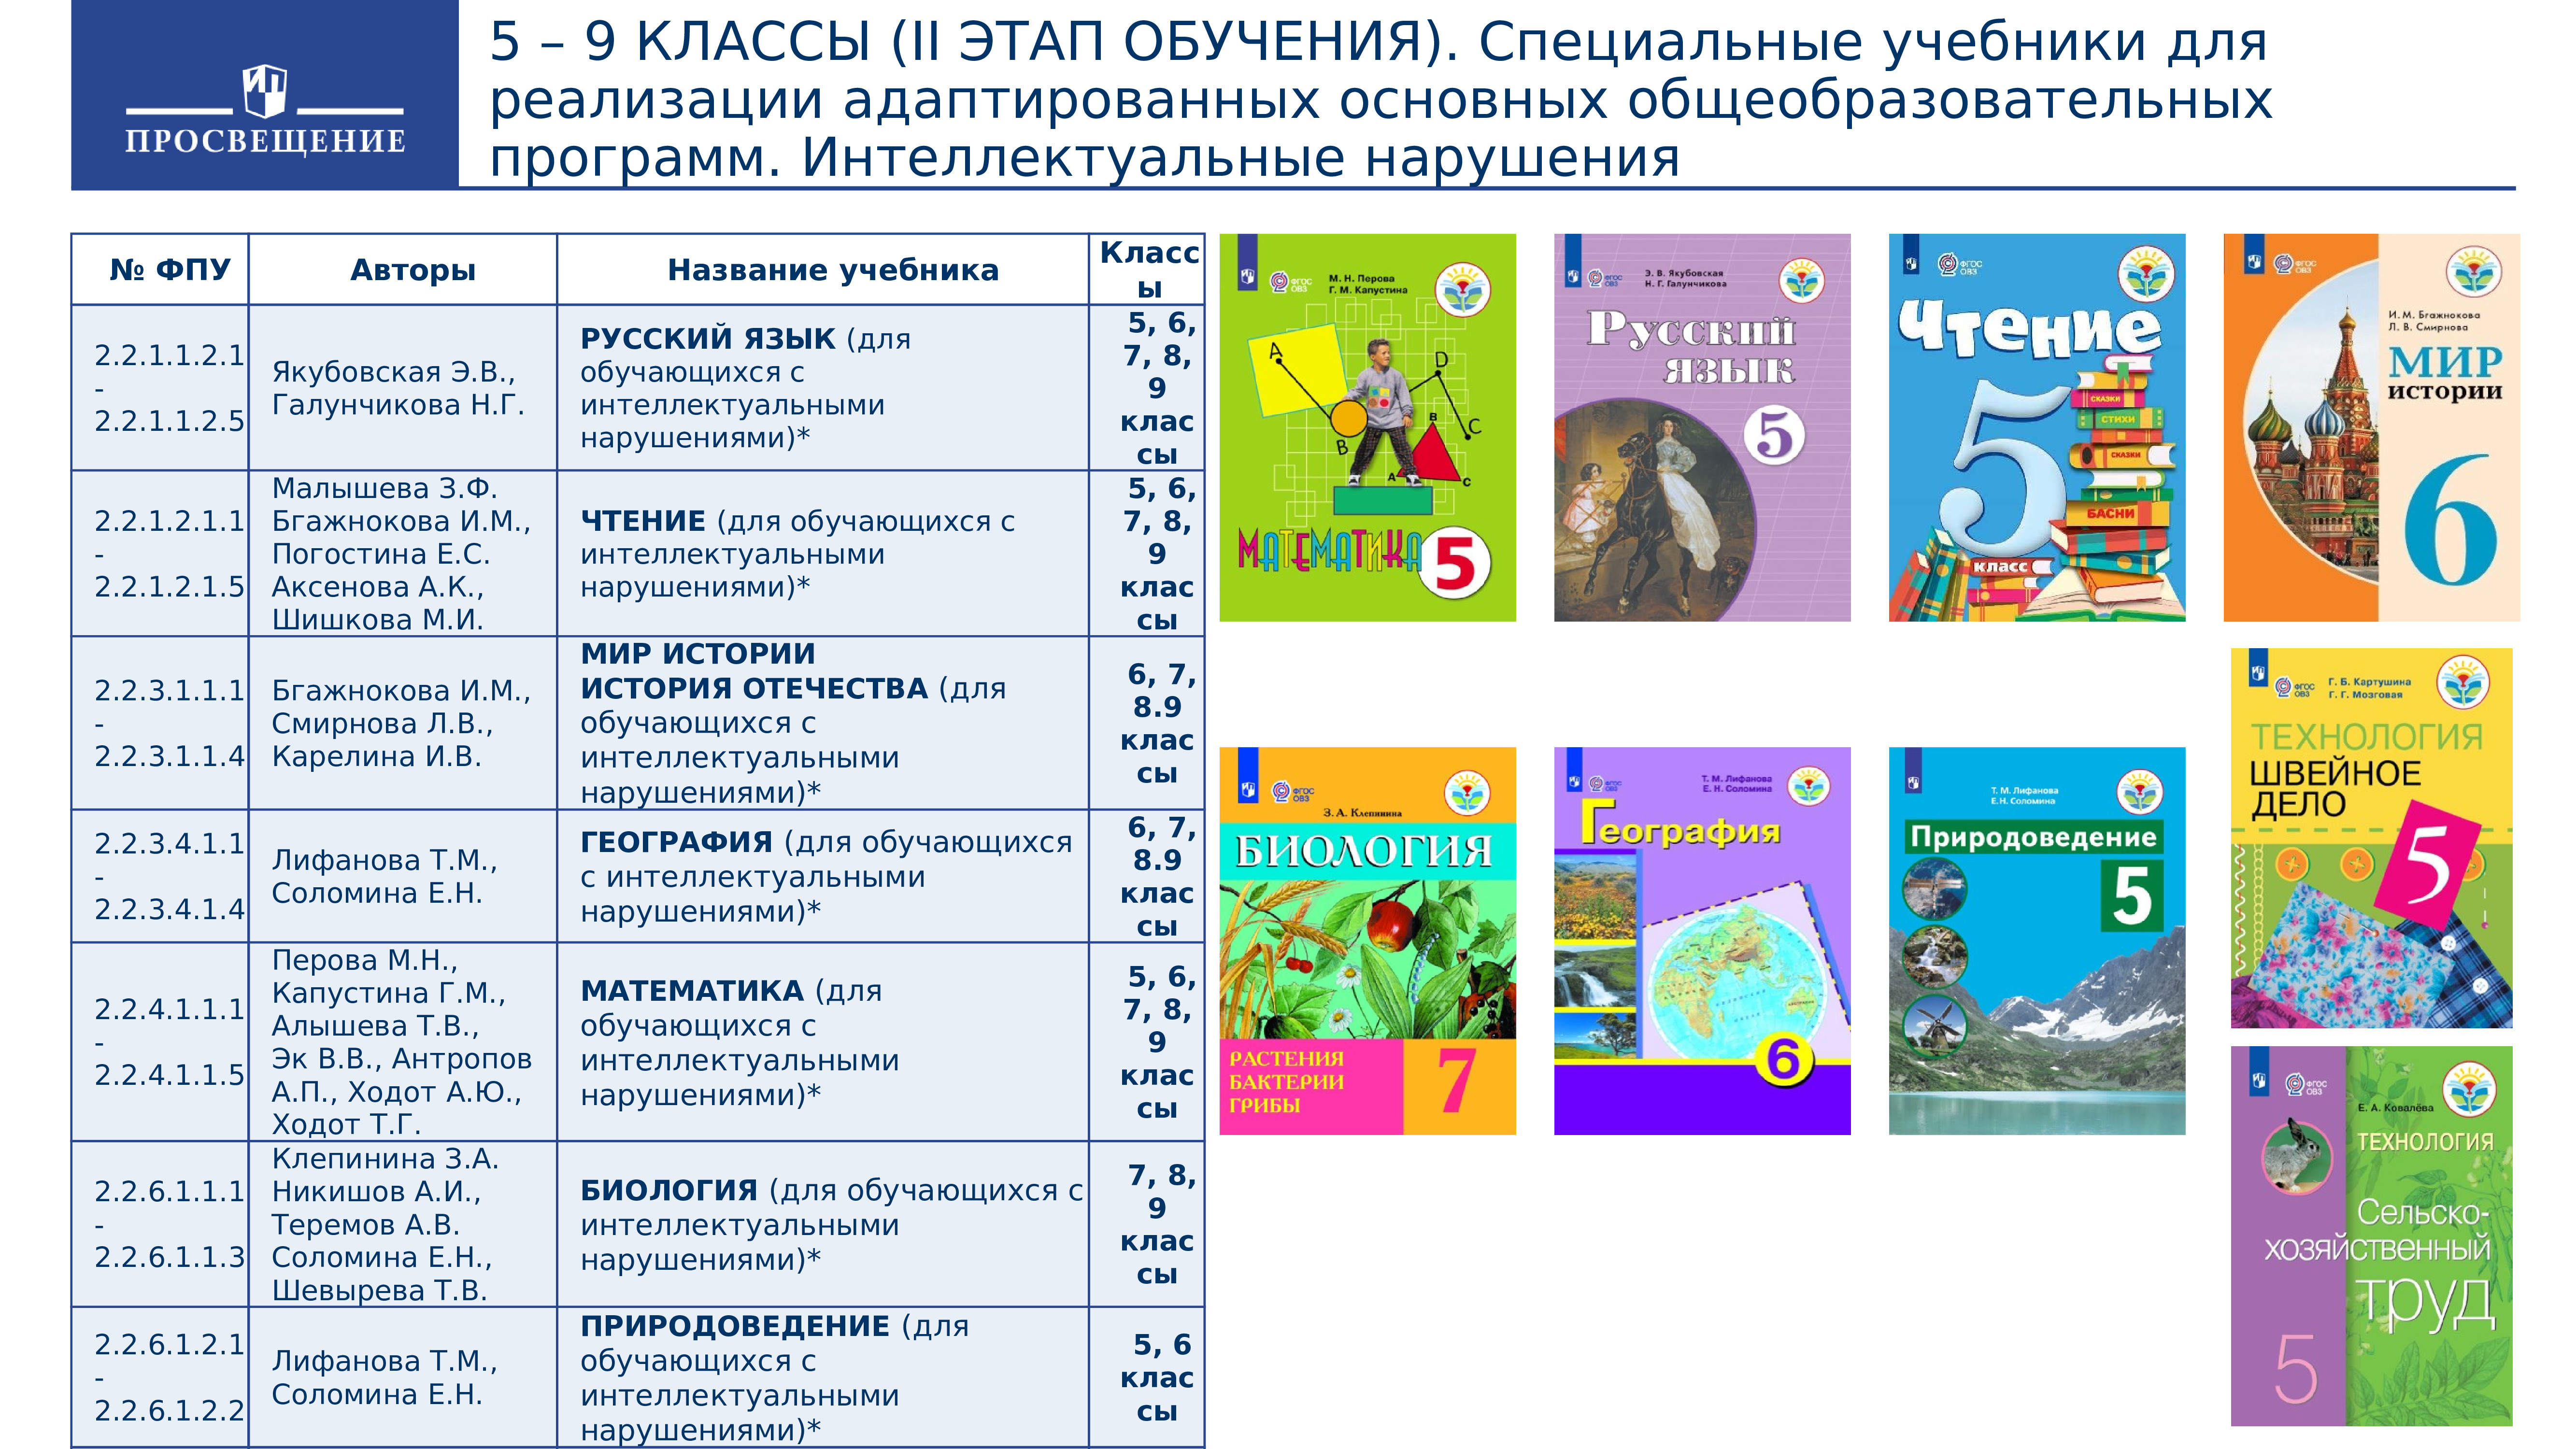 Учебники для 5 класса по программе школа России список